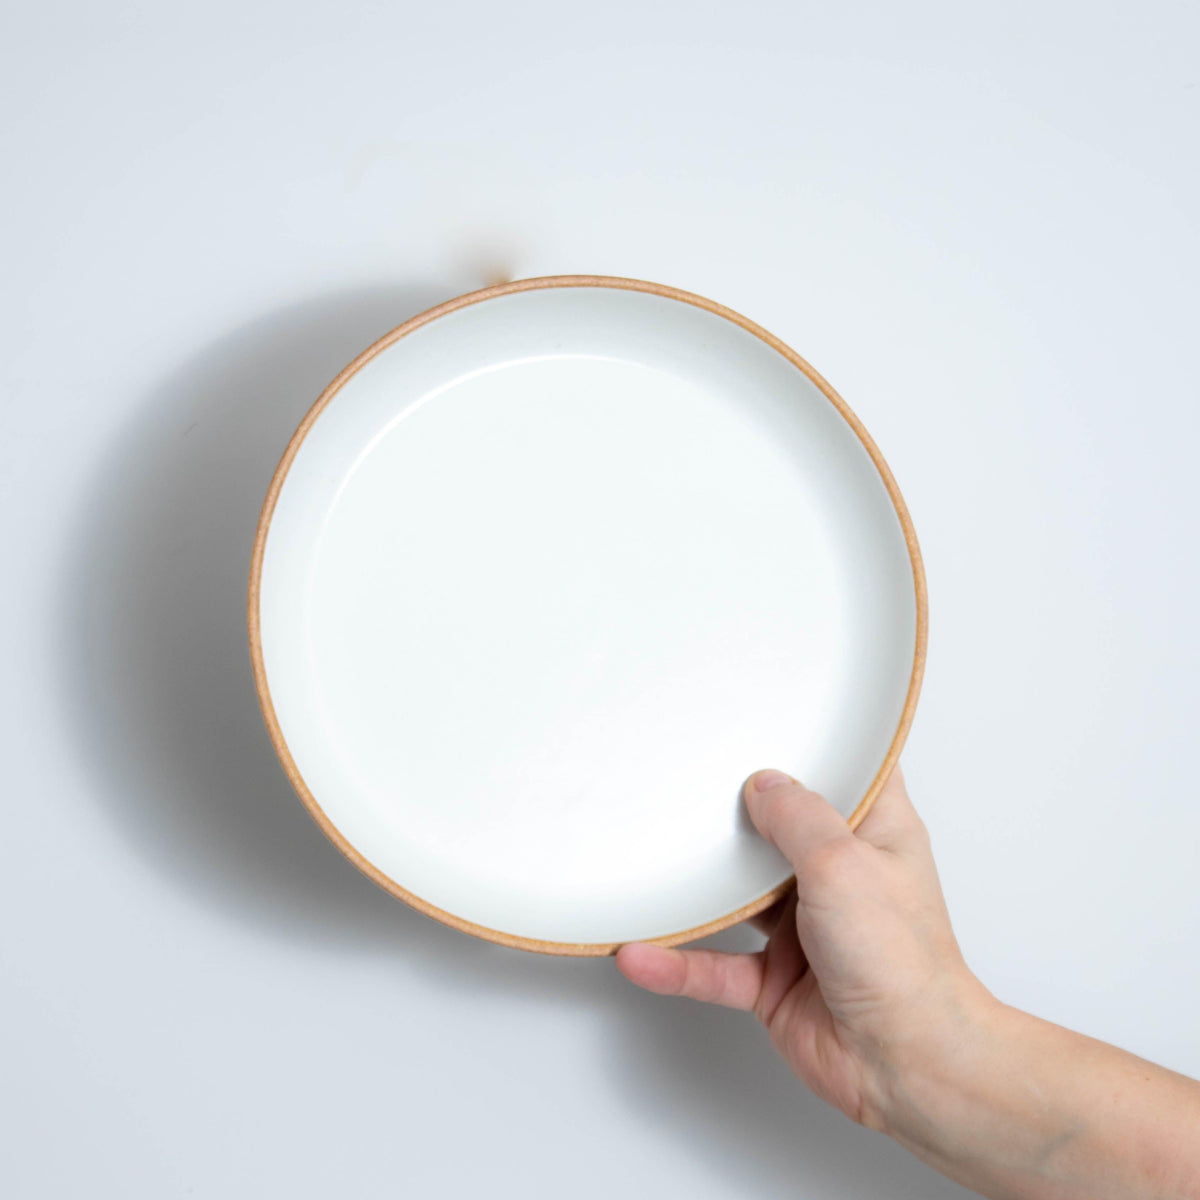 Matte White With Rye Edge Coupe Stoneware Dish - 22cm Dia